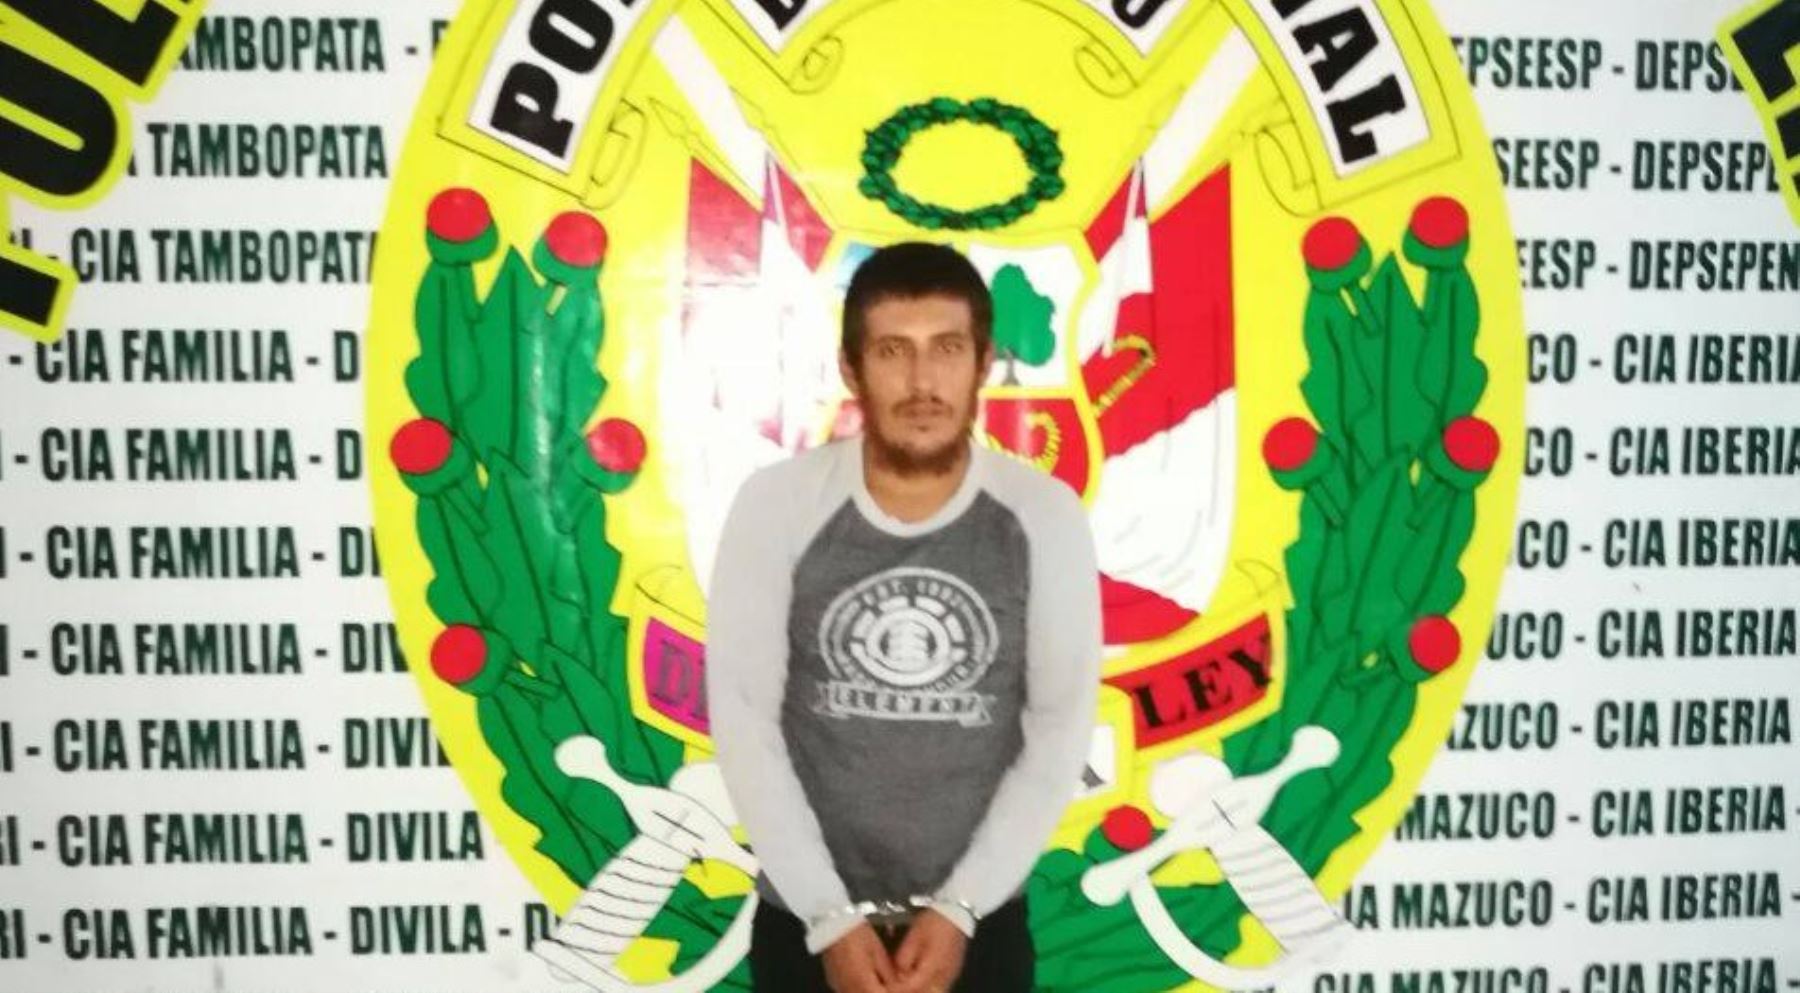 Policía Nacional del Perú capturó en Madre de Dios a Joseph Estrada Moreano (26), quien figuraba en la relación de los más buscados por el Ministerio del Interior (Mininter), por el delito de feminicidio.